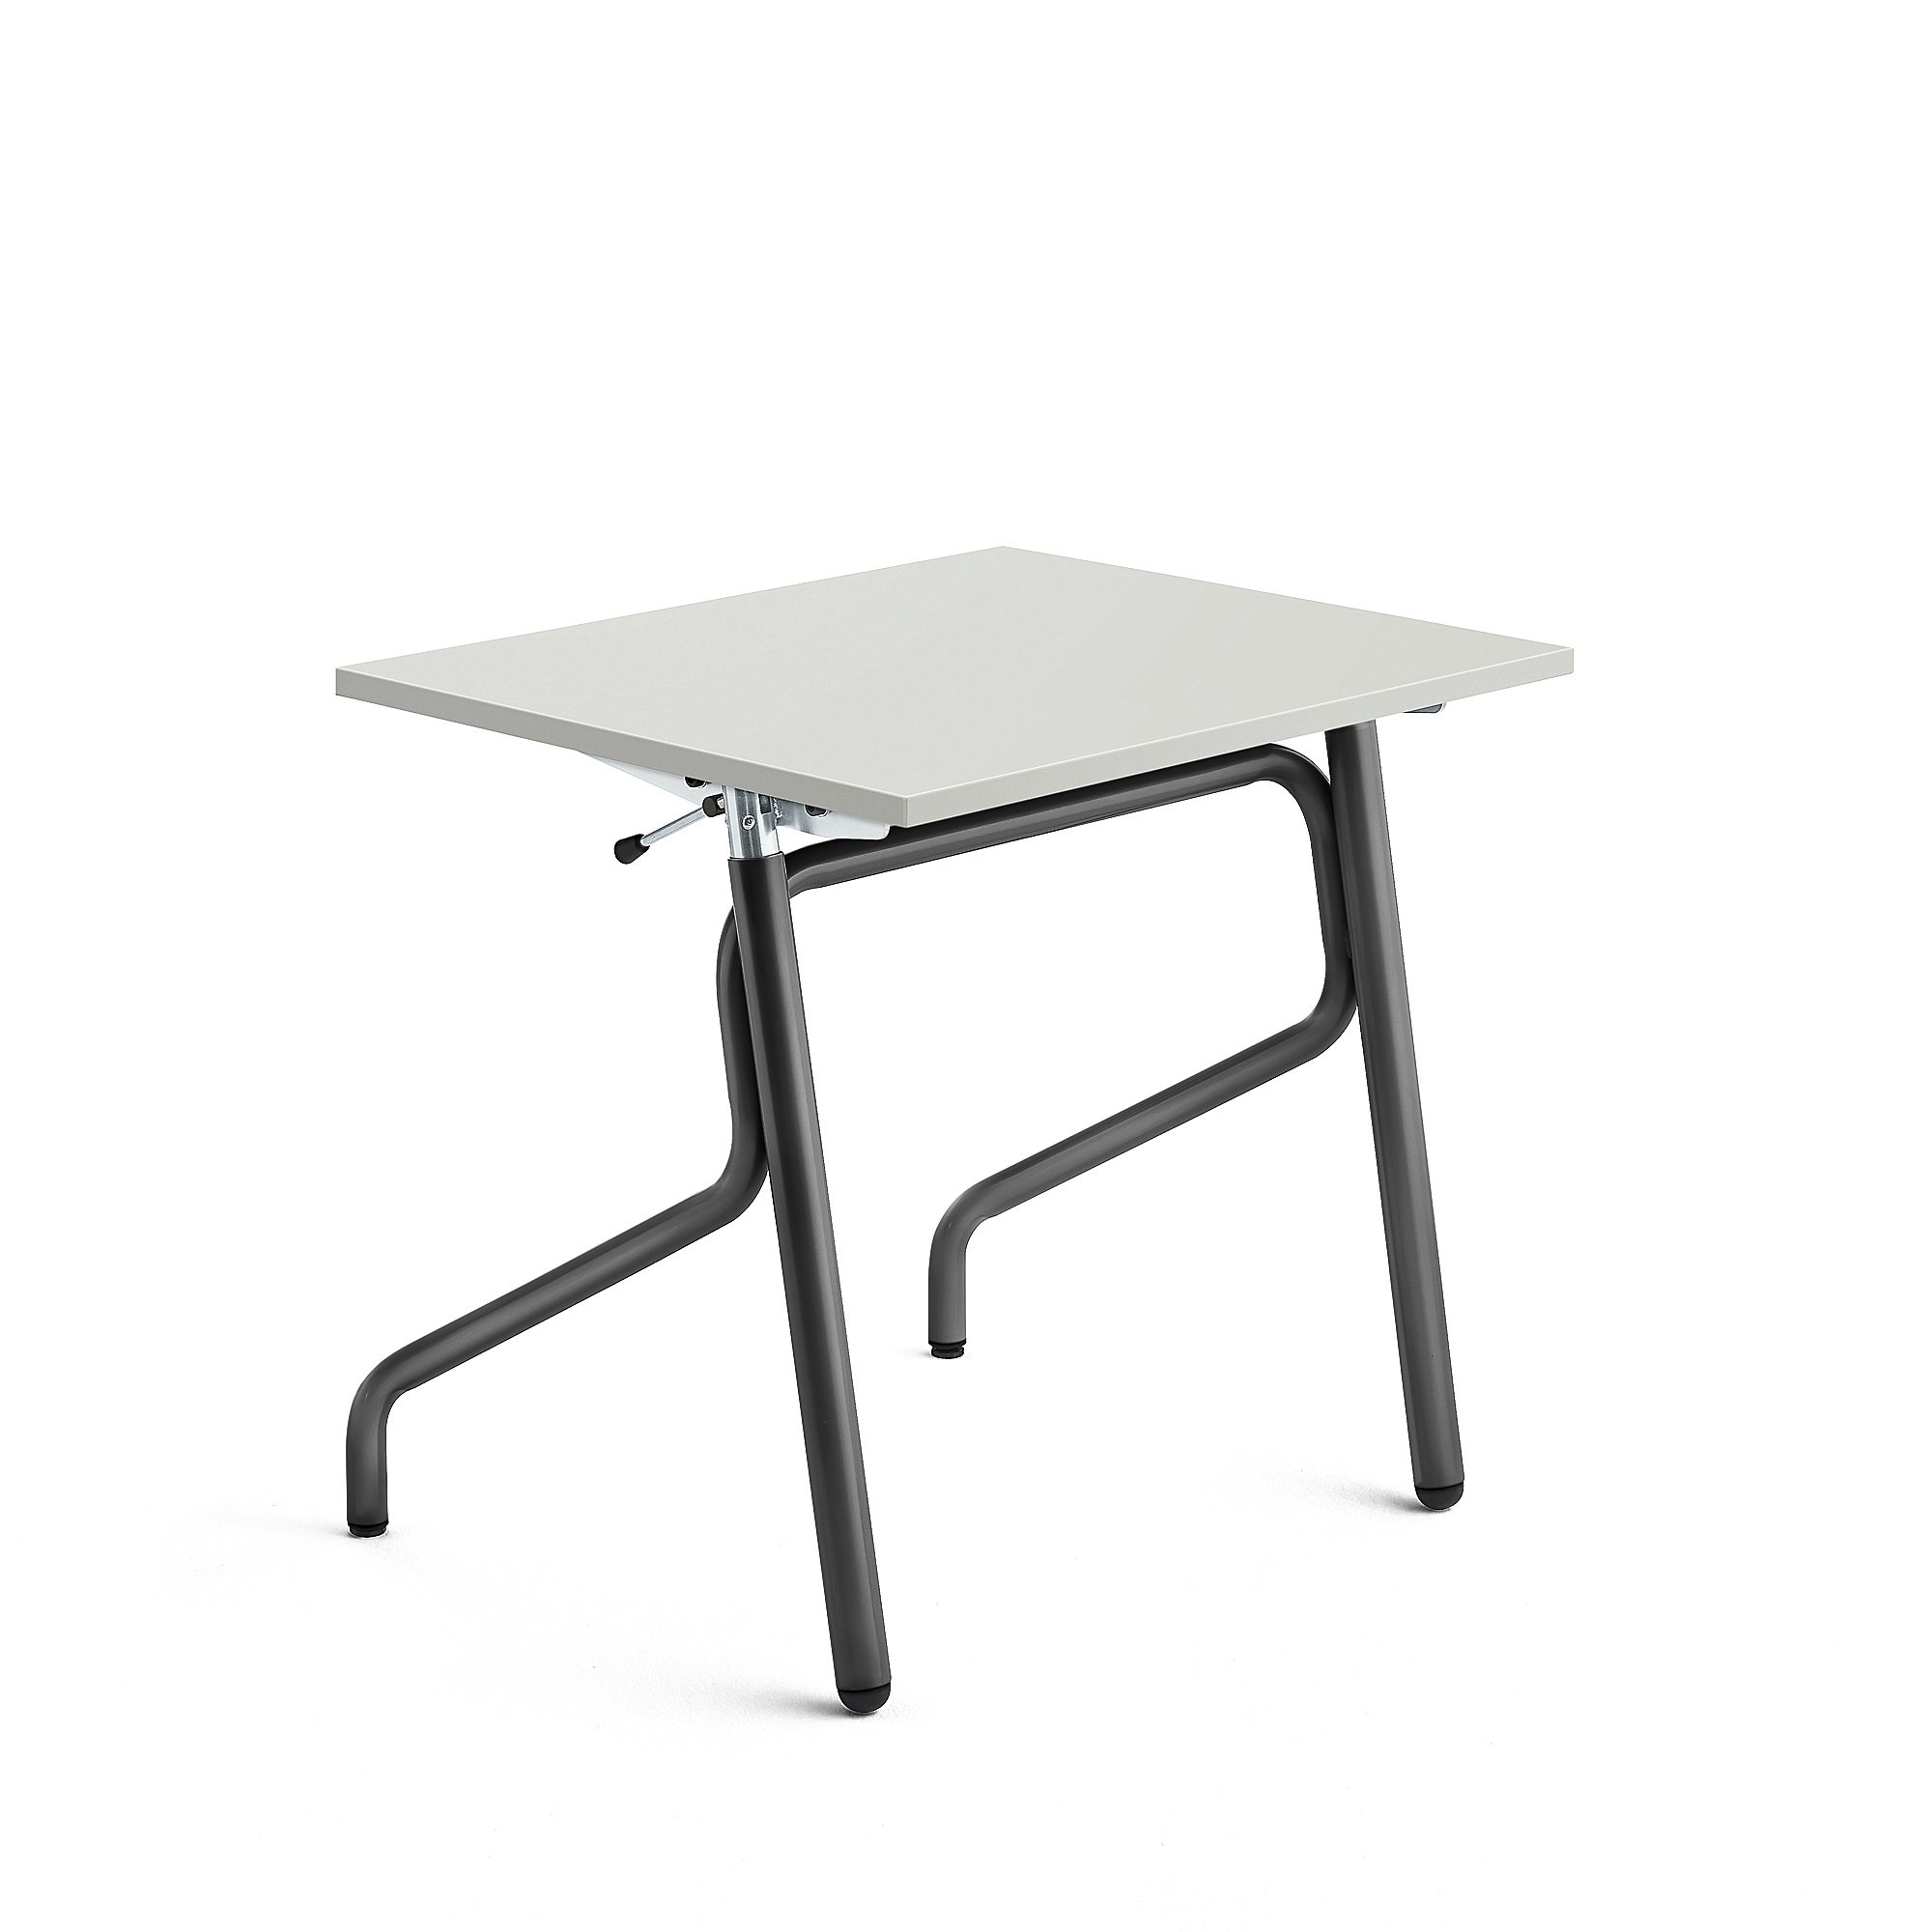 Školní lavice ADJUST, výškově nastavitelná, 700x600 mm, HPL deska, šedá, antracitově šedá